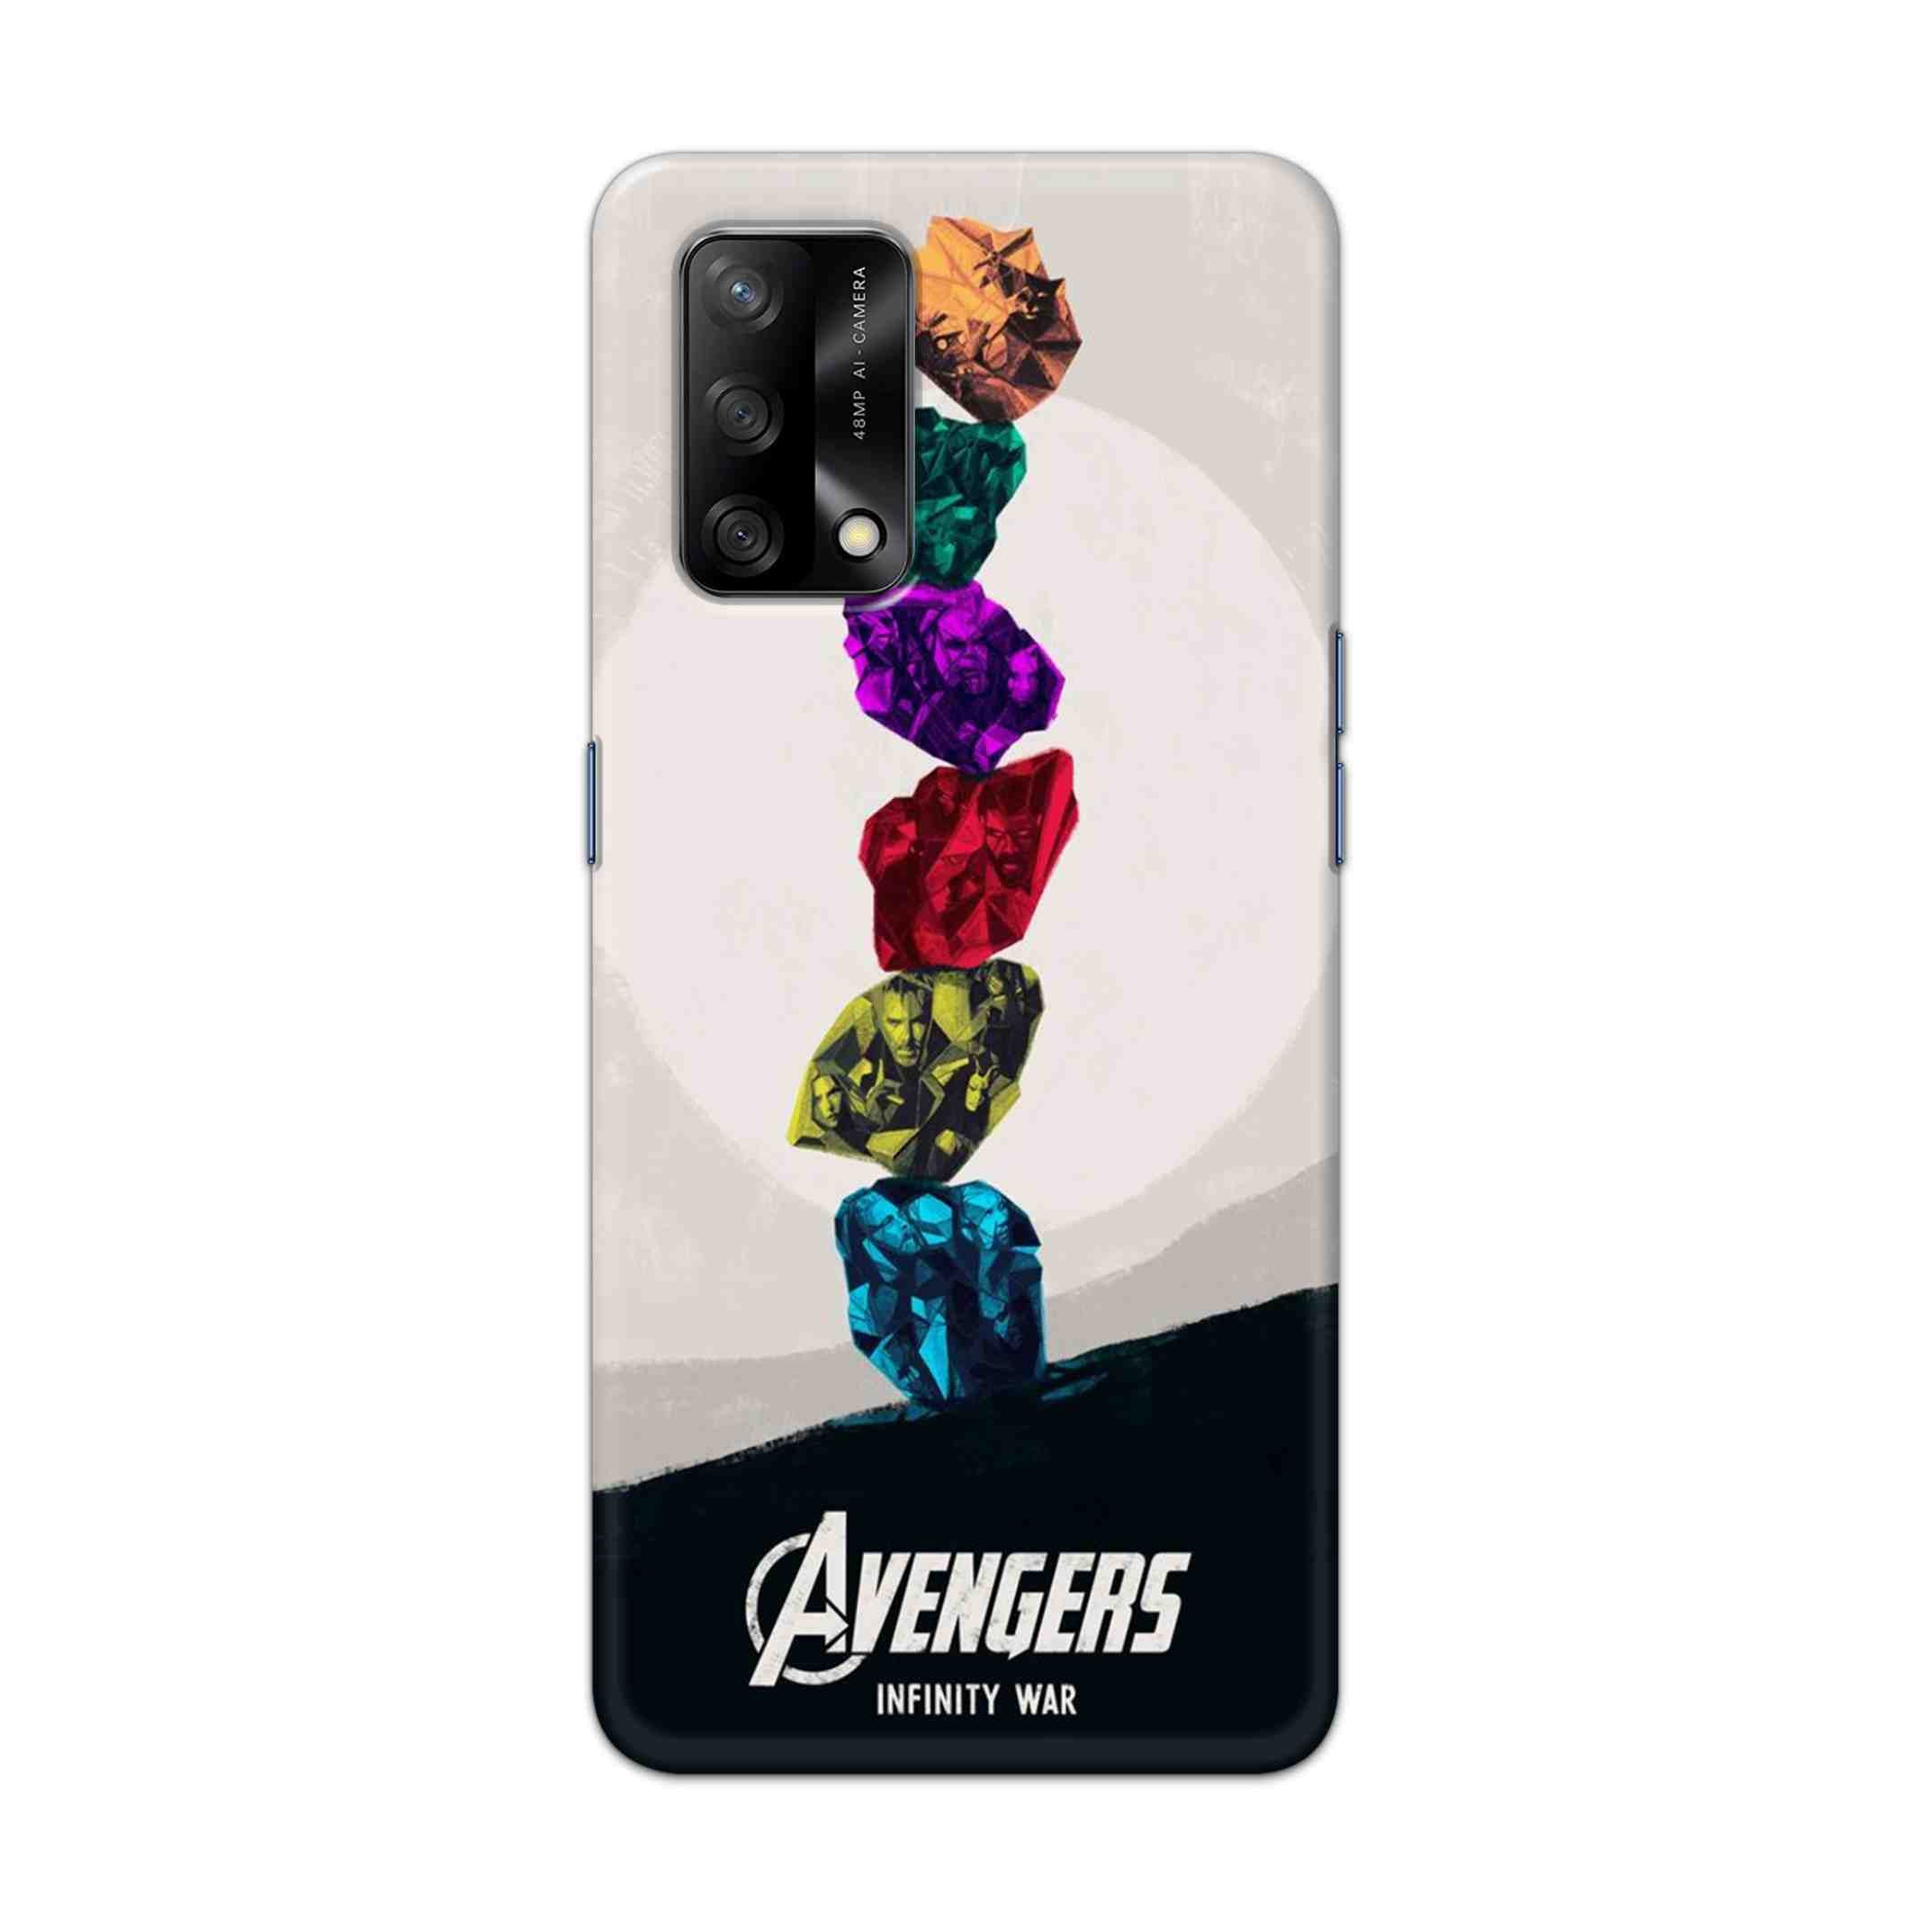 Buy Avengers Stone Hard Back Mobile Phone Case Cover For Oppo F19 Online